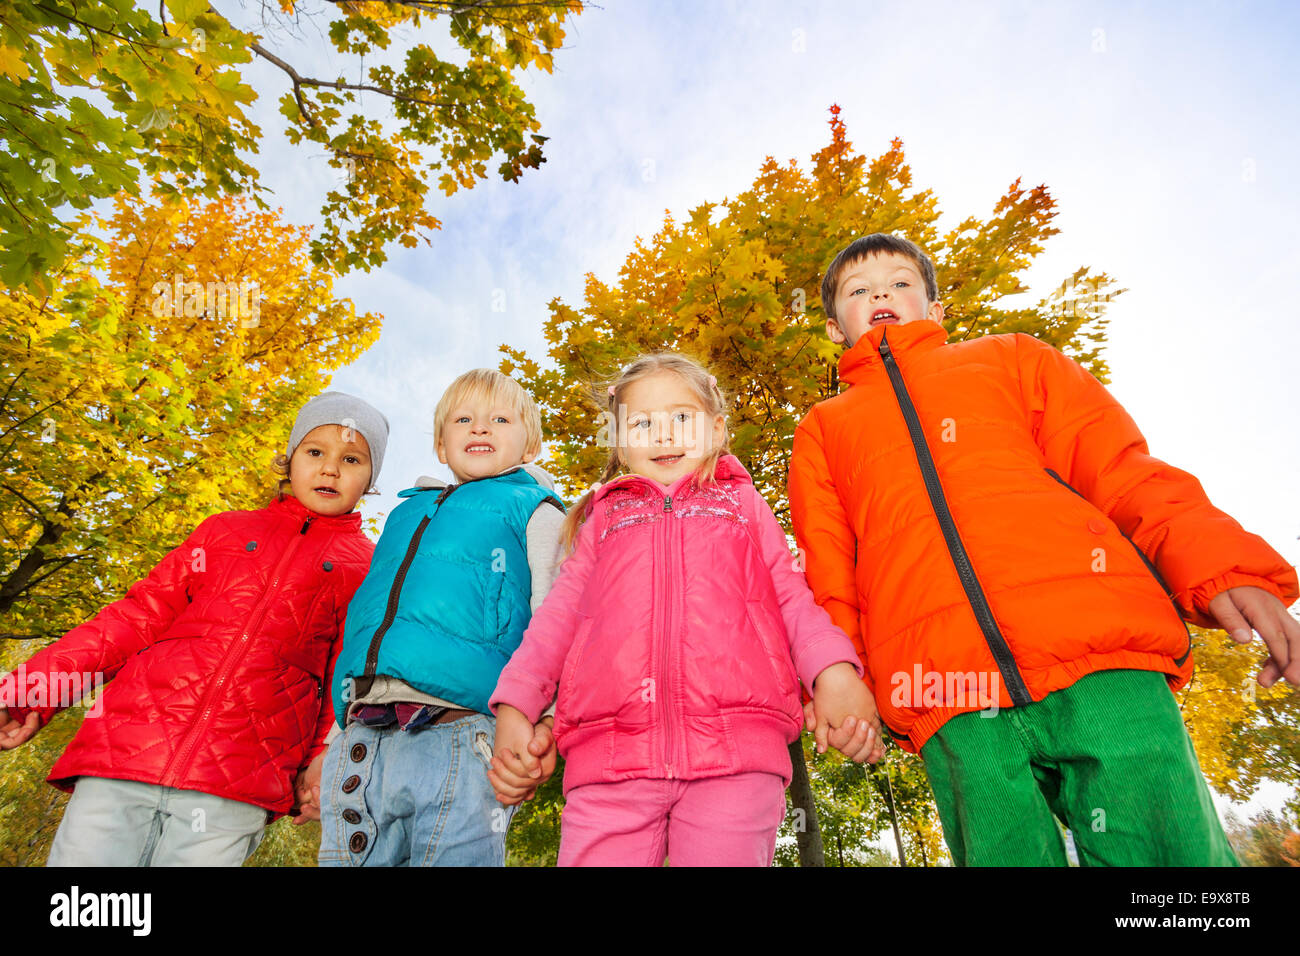 Enfants heureux dans vestes colorées Standing together Banque D'Images